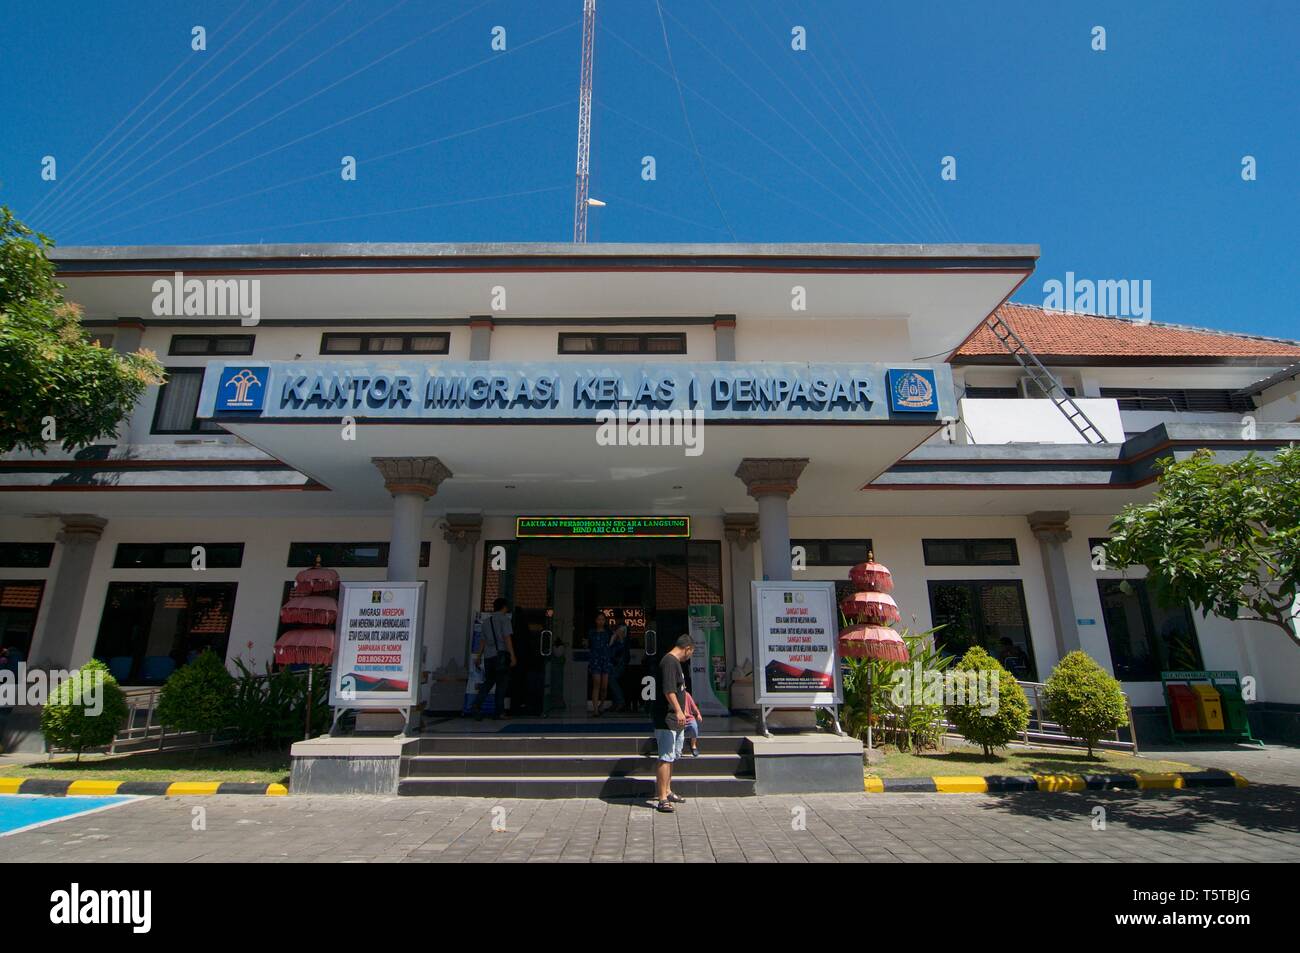 Denpasar, Bali, Indonesia - 24 Aprile 2019 : immagine dell'esterno dell'edificio dell'ufficio immigrazione (Imigrasi Kantor) a Denpasar, Bali - Indones Foto Stock